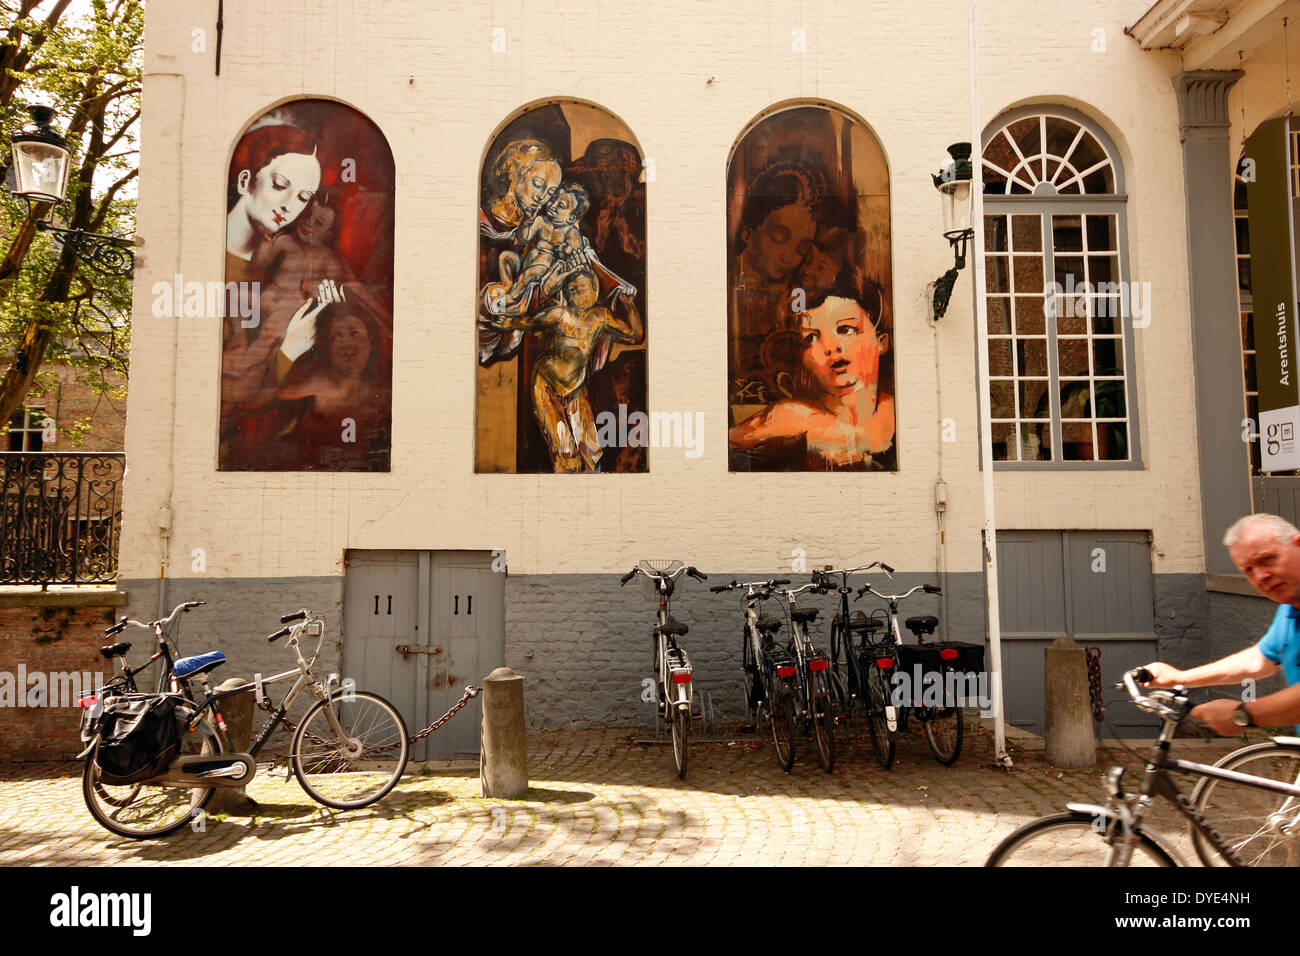 Bicycles under the exterior murals of the Groeningemuseum, Bruges, Belgium Stock Photo